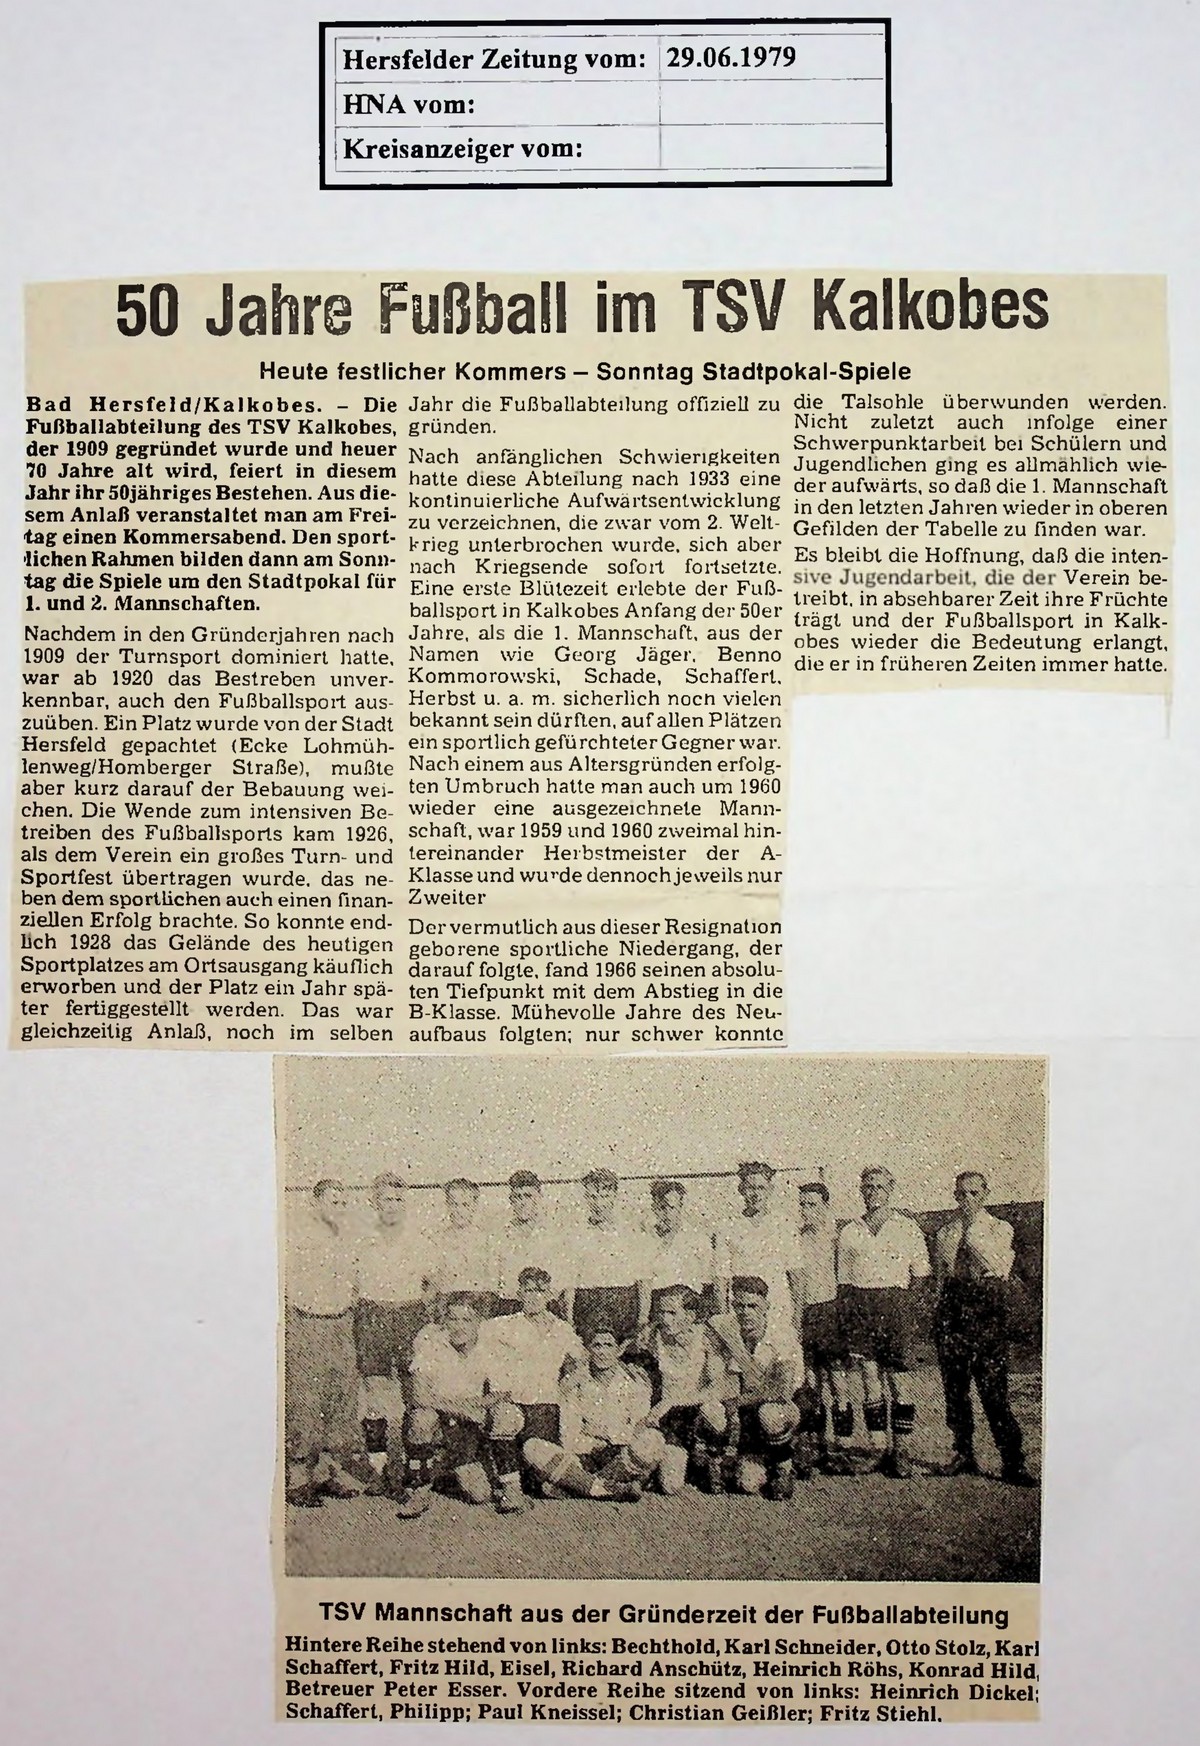 50 Jahre Fußball in Kalkobes (1979)